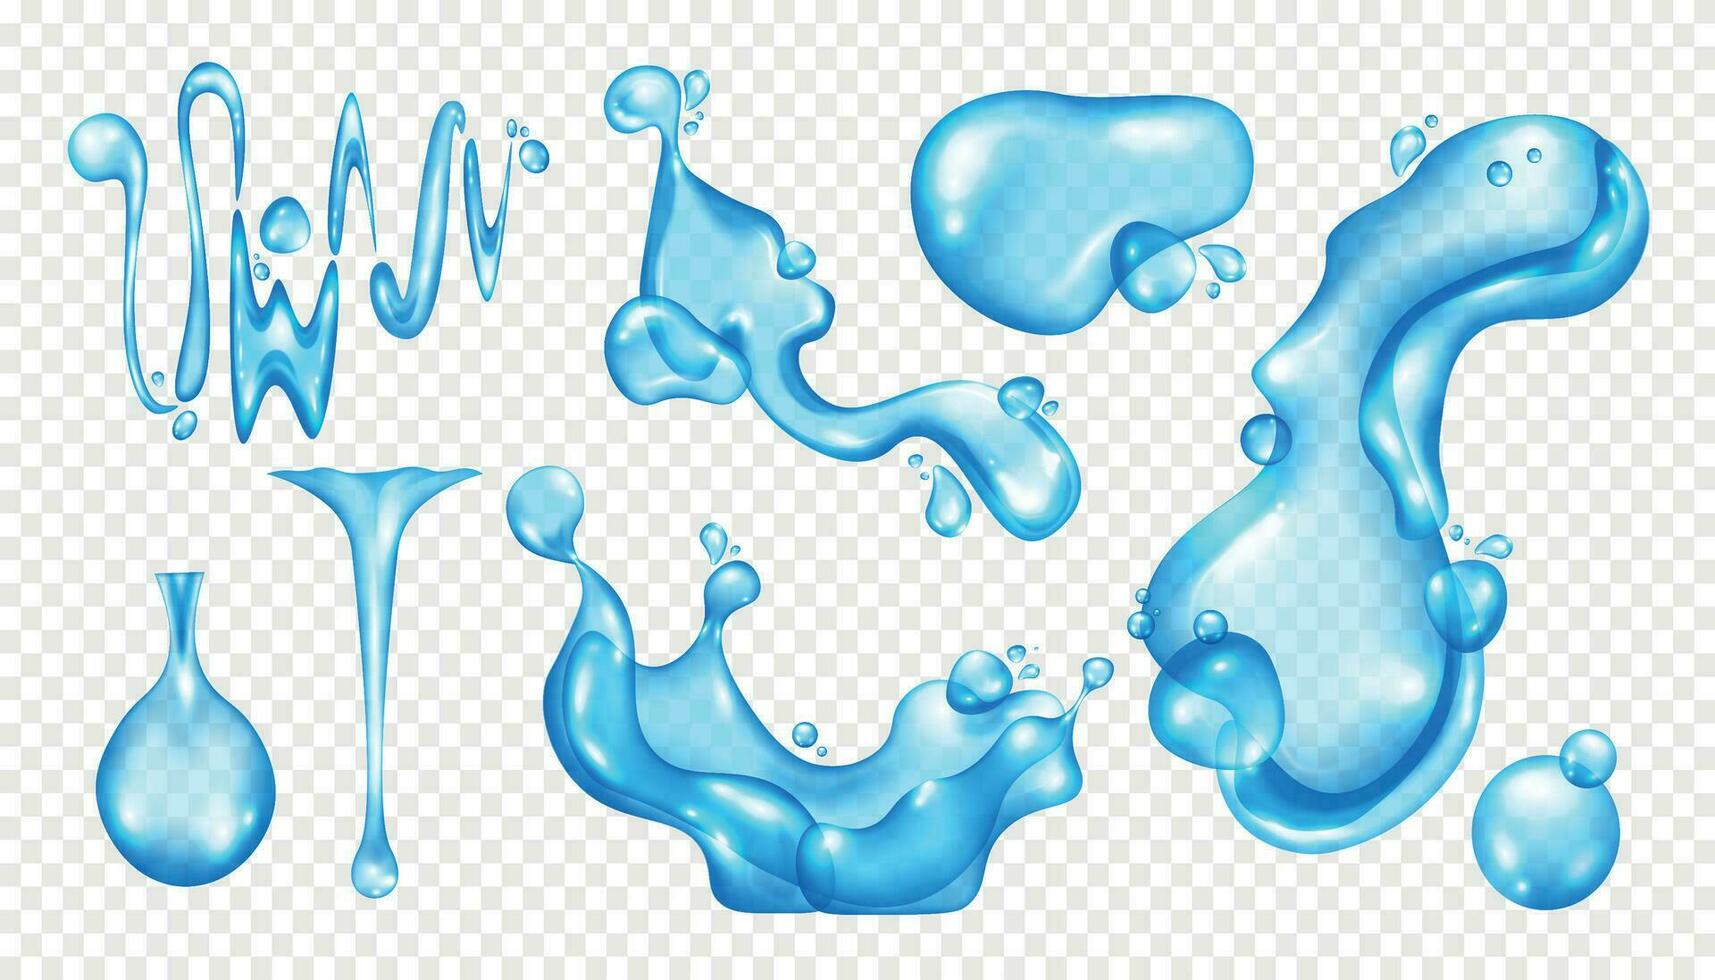 Realistic Water Splash Set vector